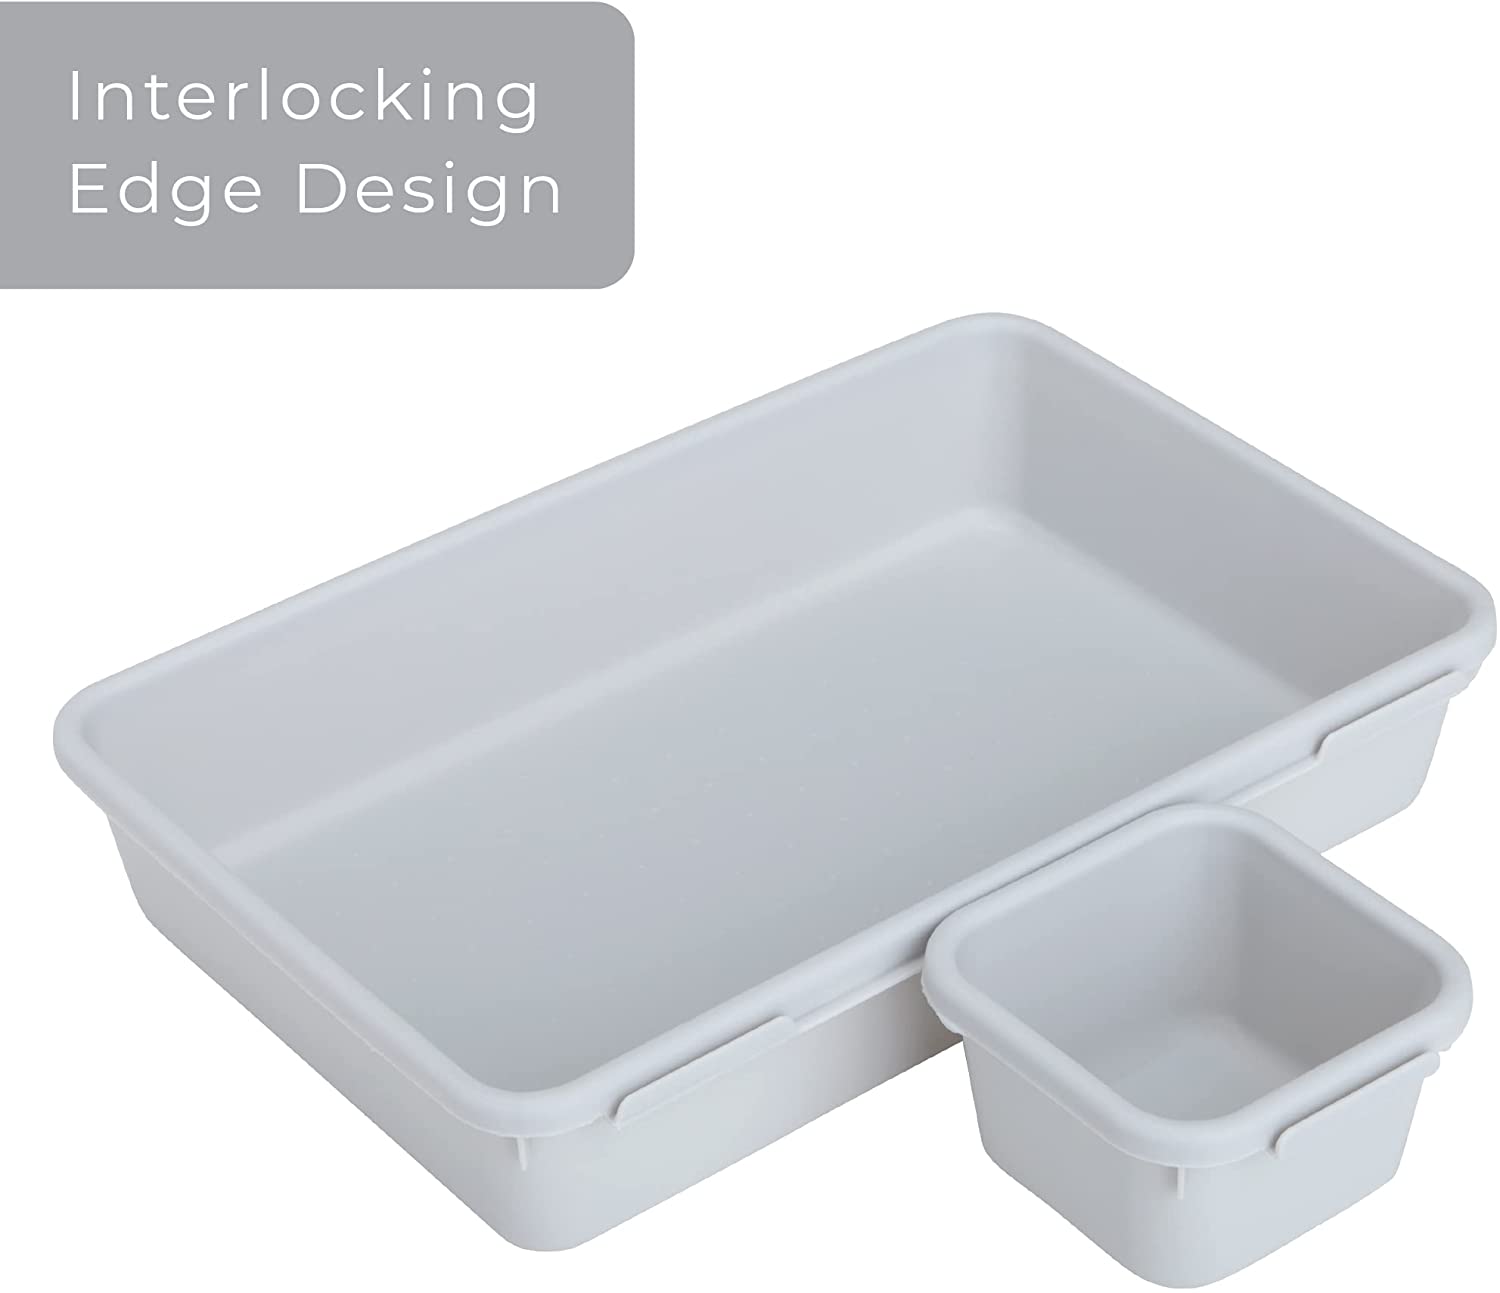  Smart Design Interlocking Drawer Organizer - 8 Piece Set - BPA  Free - Utensils, Flatware, Office, Personal Care, or Makeup Storage -  Kitchen - Graphite Gray